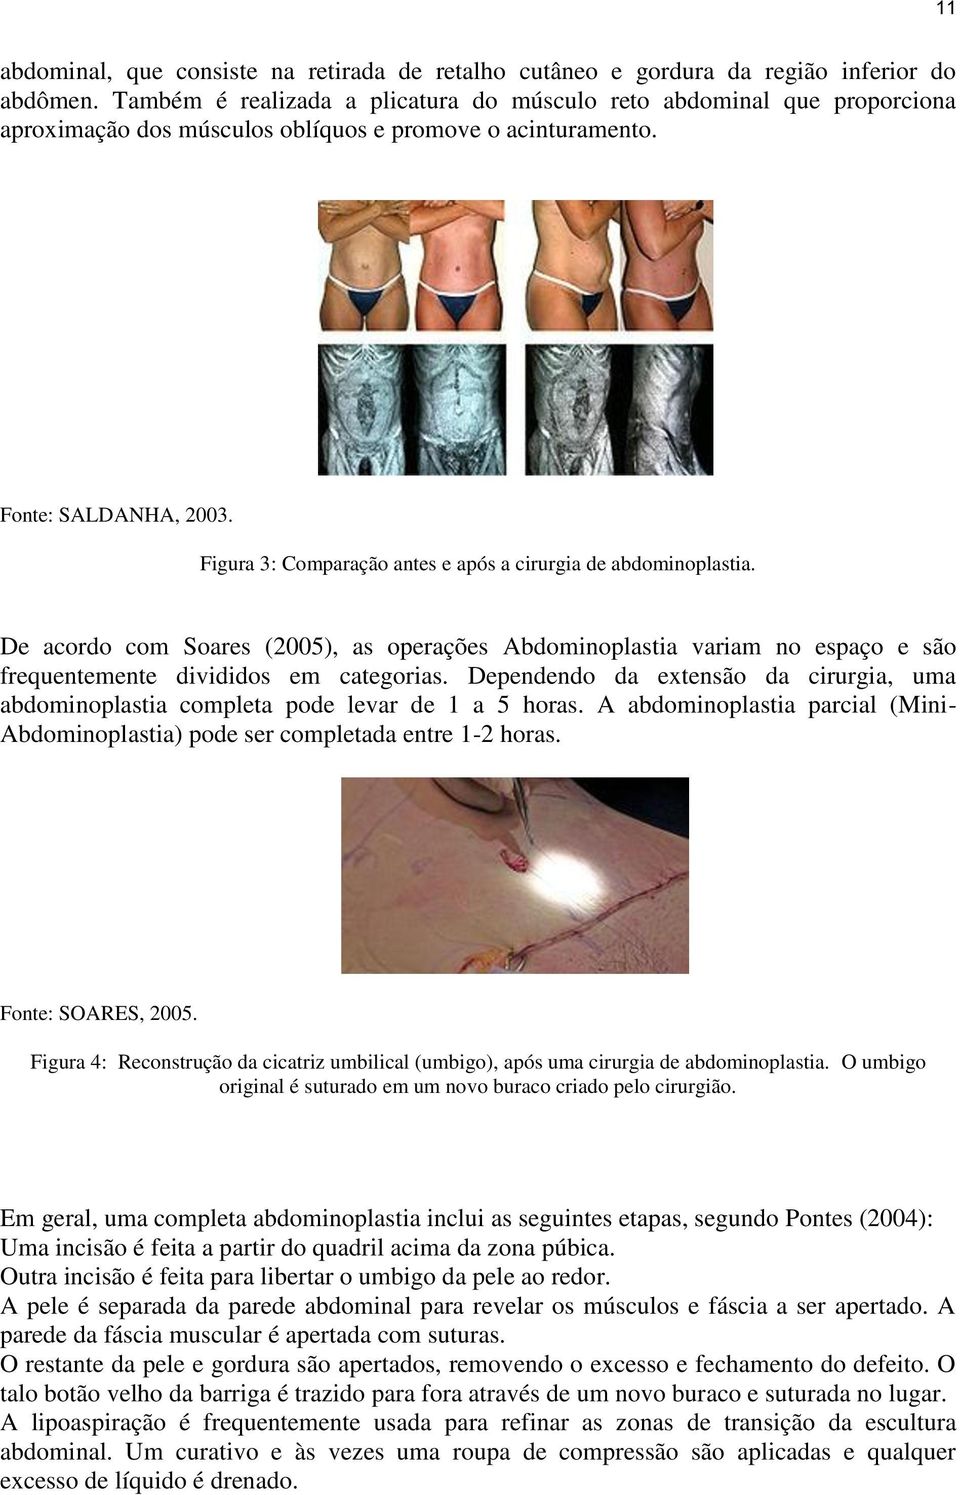 Figura 3: Comparação antes e após a cirurgia de abdominoplastia. De acordo com Soares (2005), as operações Abdominoplastia variam no espaço e são frequentemente divididos em categorias.